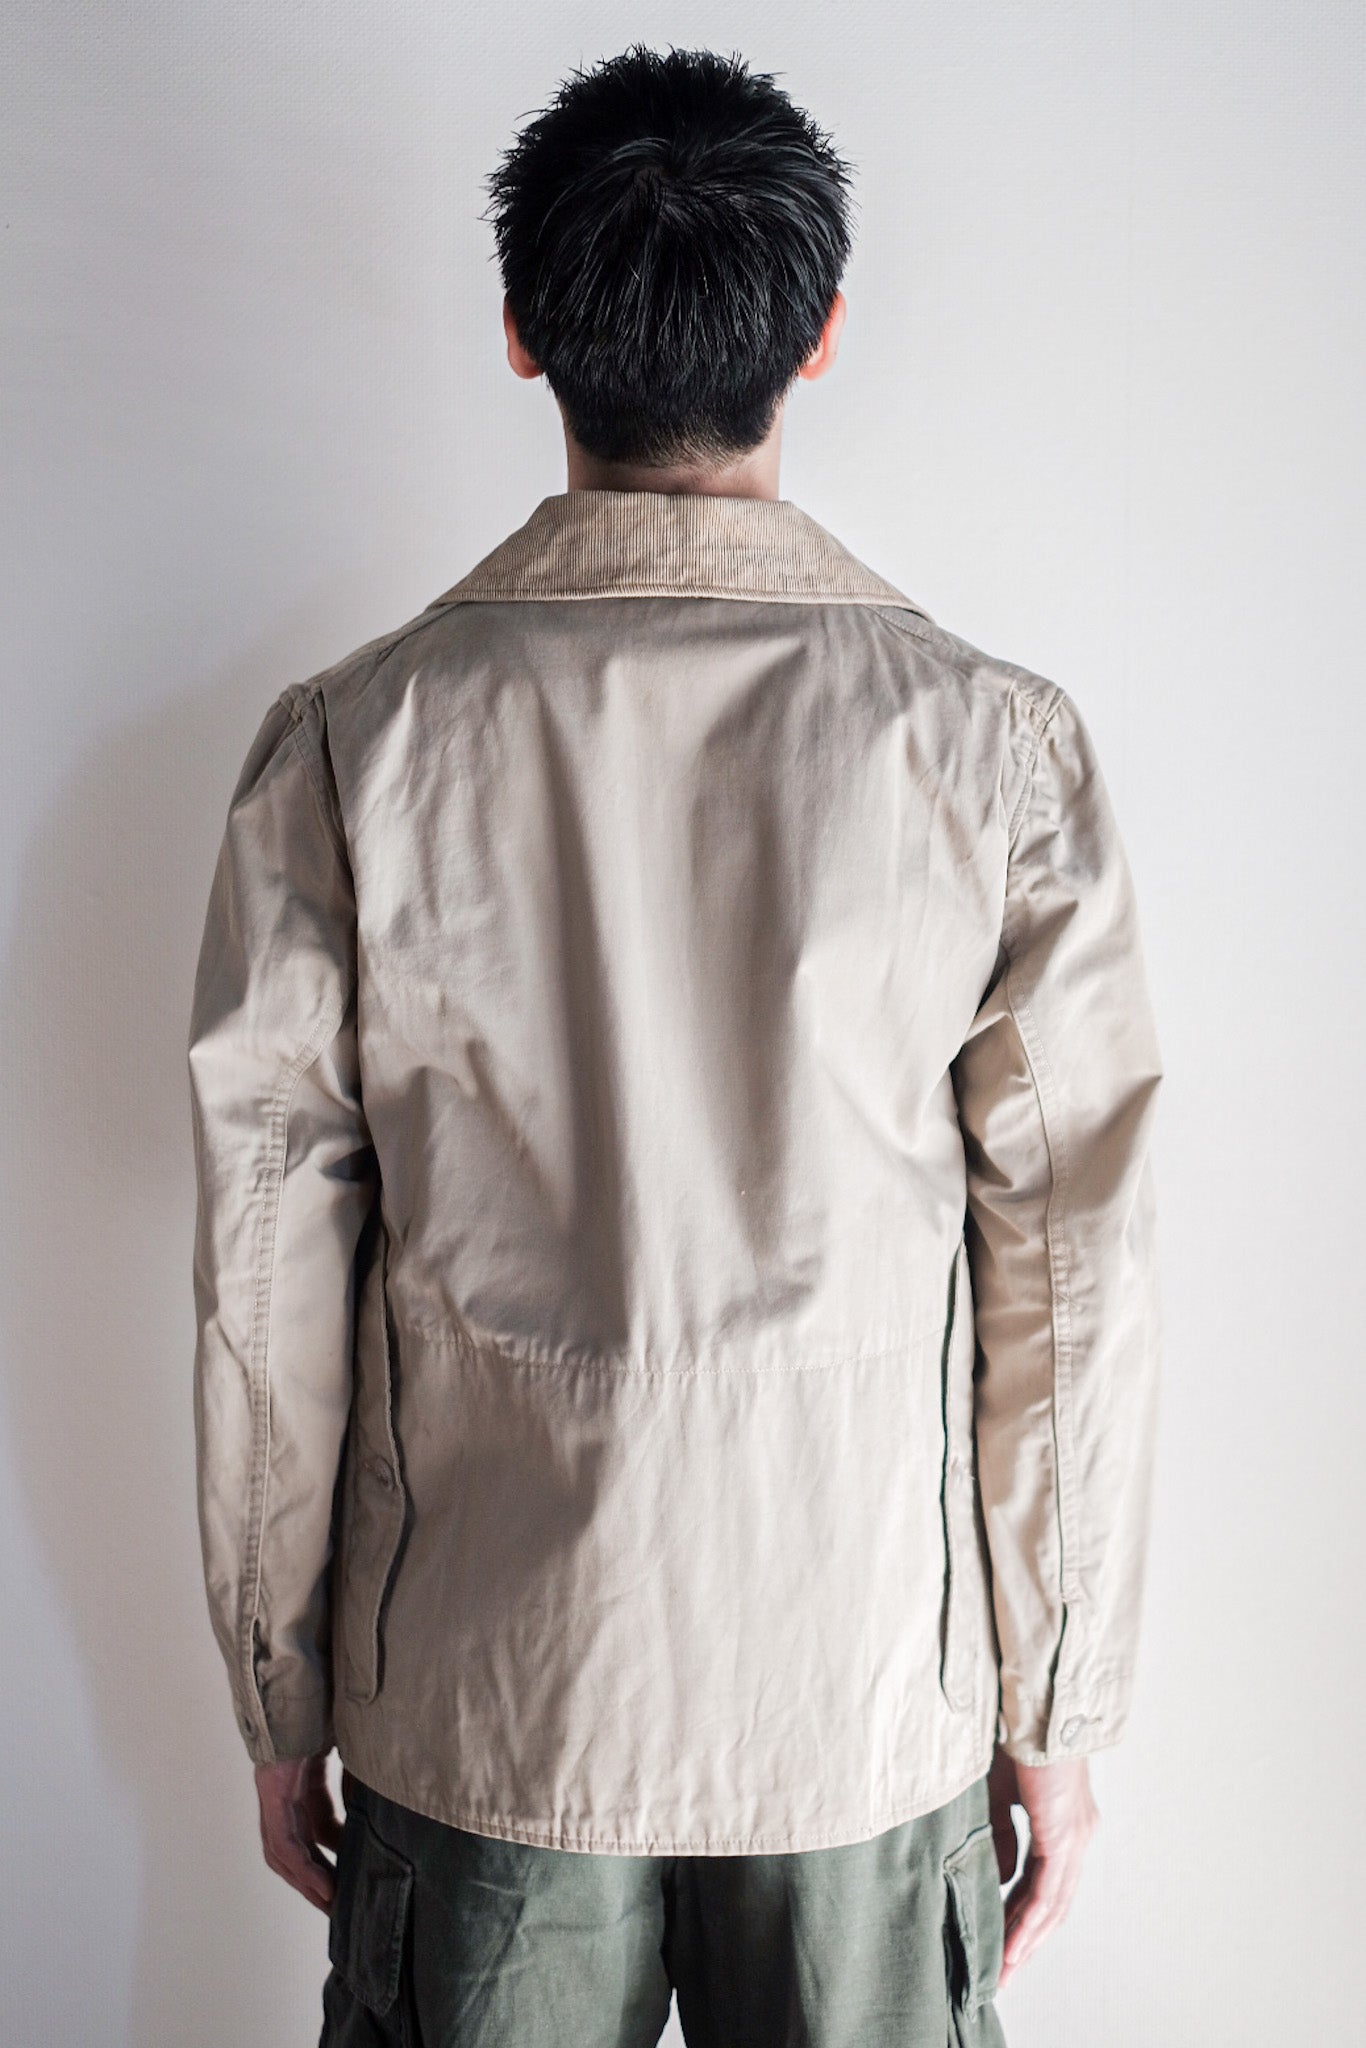 [~ 70 년대] 빈티지 Abercrombie & Fitch Safari 재킷